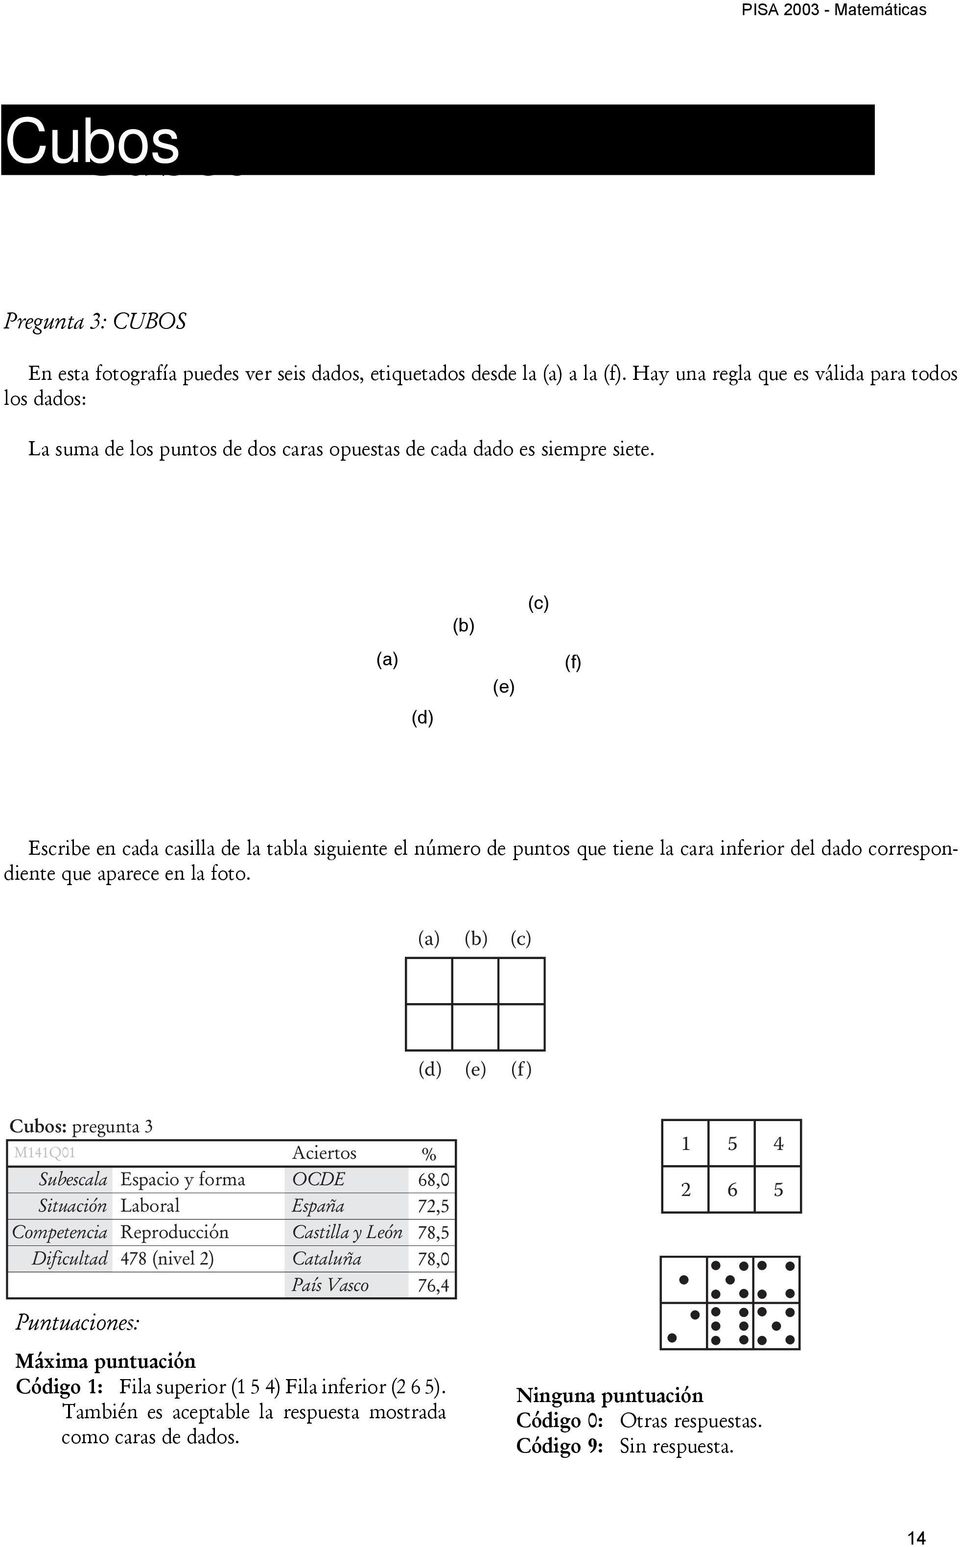 (a) (d) (b) (e) (c) (f) Escribe en cada casilla de la tabla siguiente el número de puntos que tiene la cara inferior del dado correspondiente que aparece en la foto.